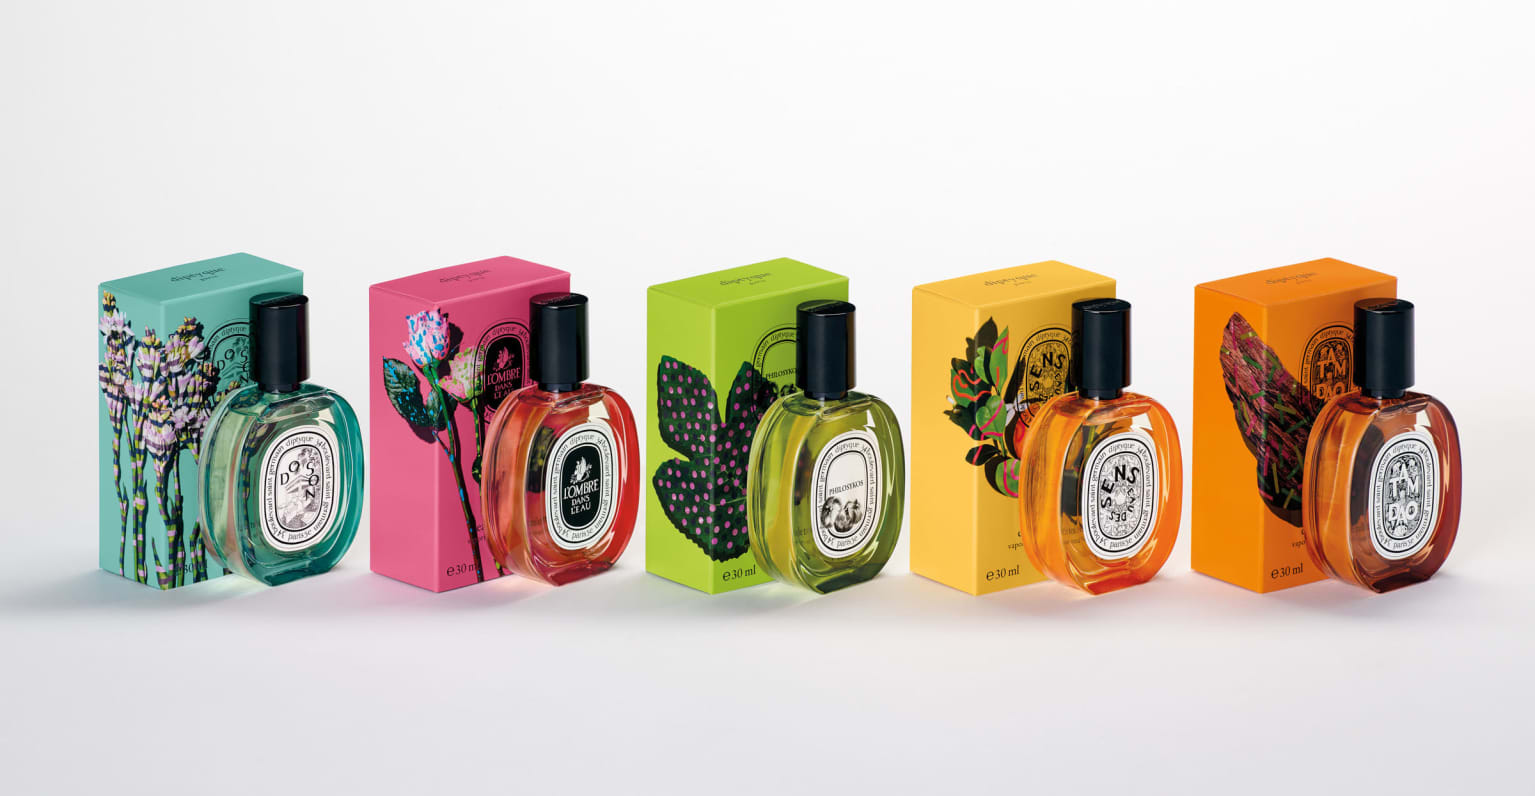 「ディプティック」の定番香水が限定パッケージに、新作コレクションの世界観を体現した限定店がオープン | GlamJP グラム